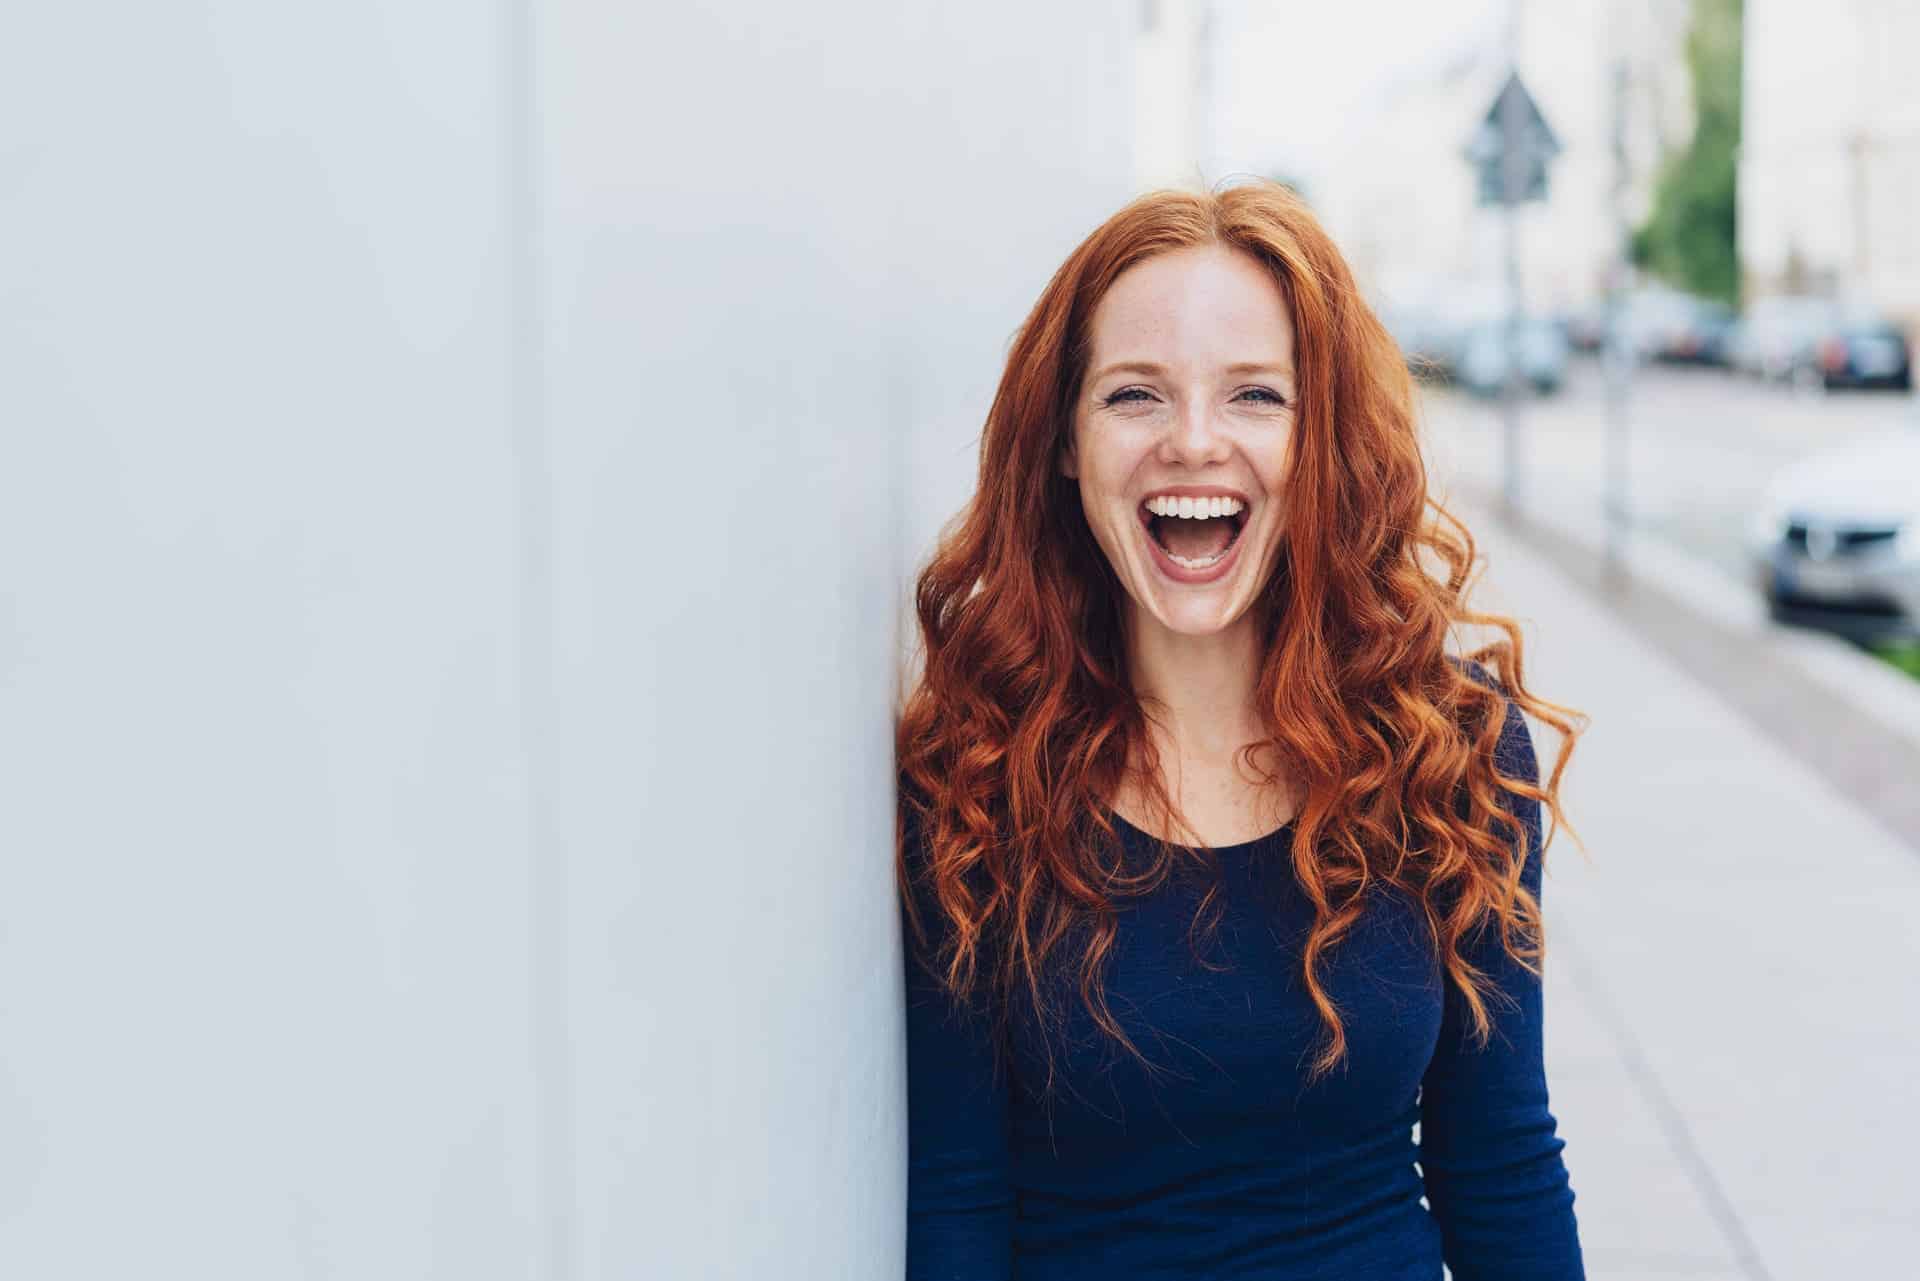 Eine rothaarige junge Frau lehnt sich an eine Wand und lacht. Dabei zeigt sie ihr schönes harmonisches Lächeln.